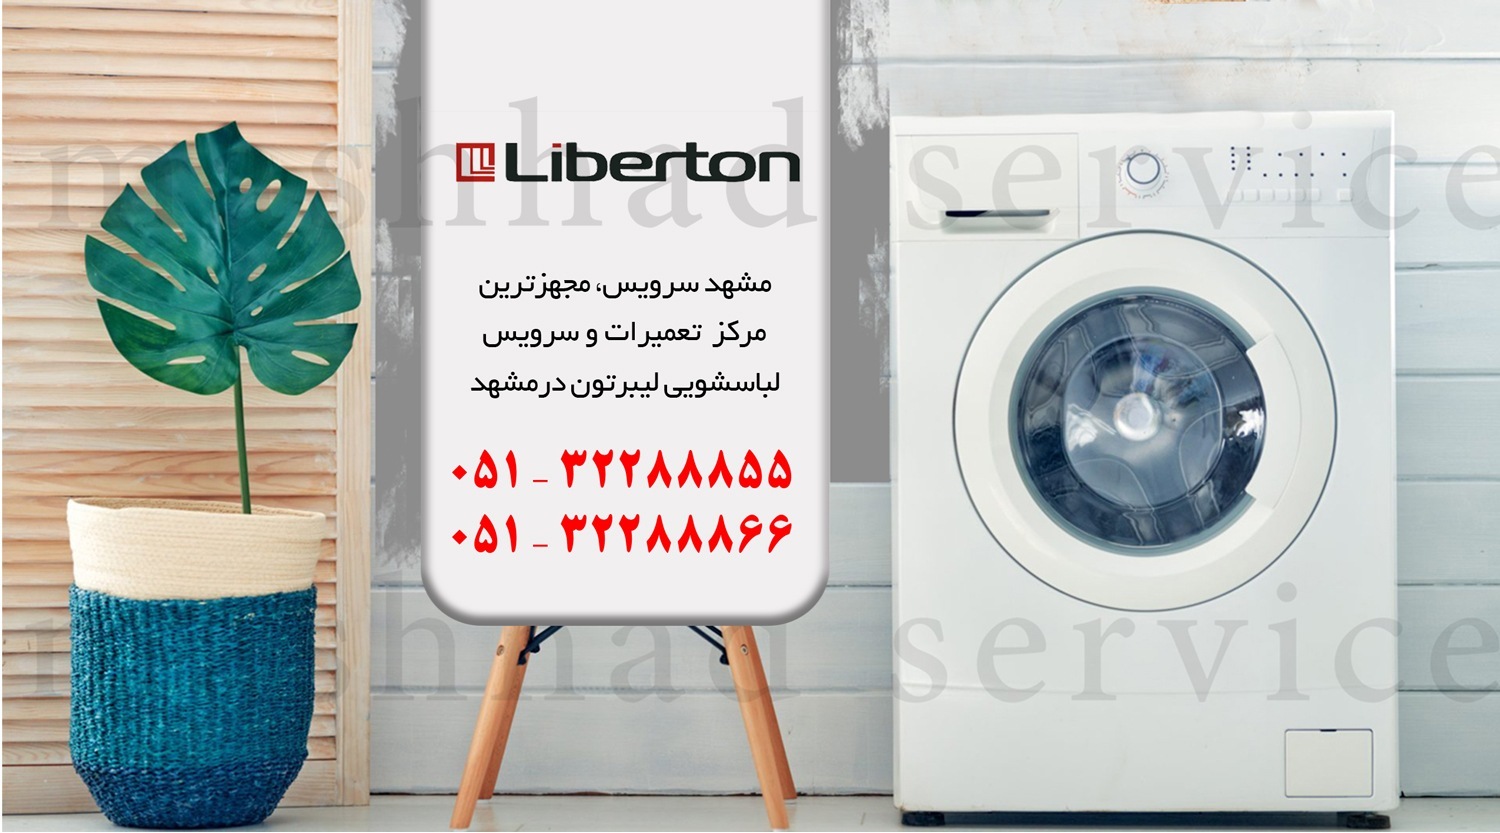 تعمیر ماشین لباسشویی لیبرتون در مشهد